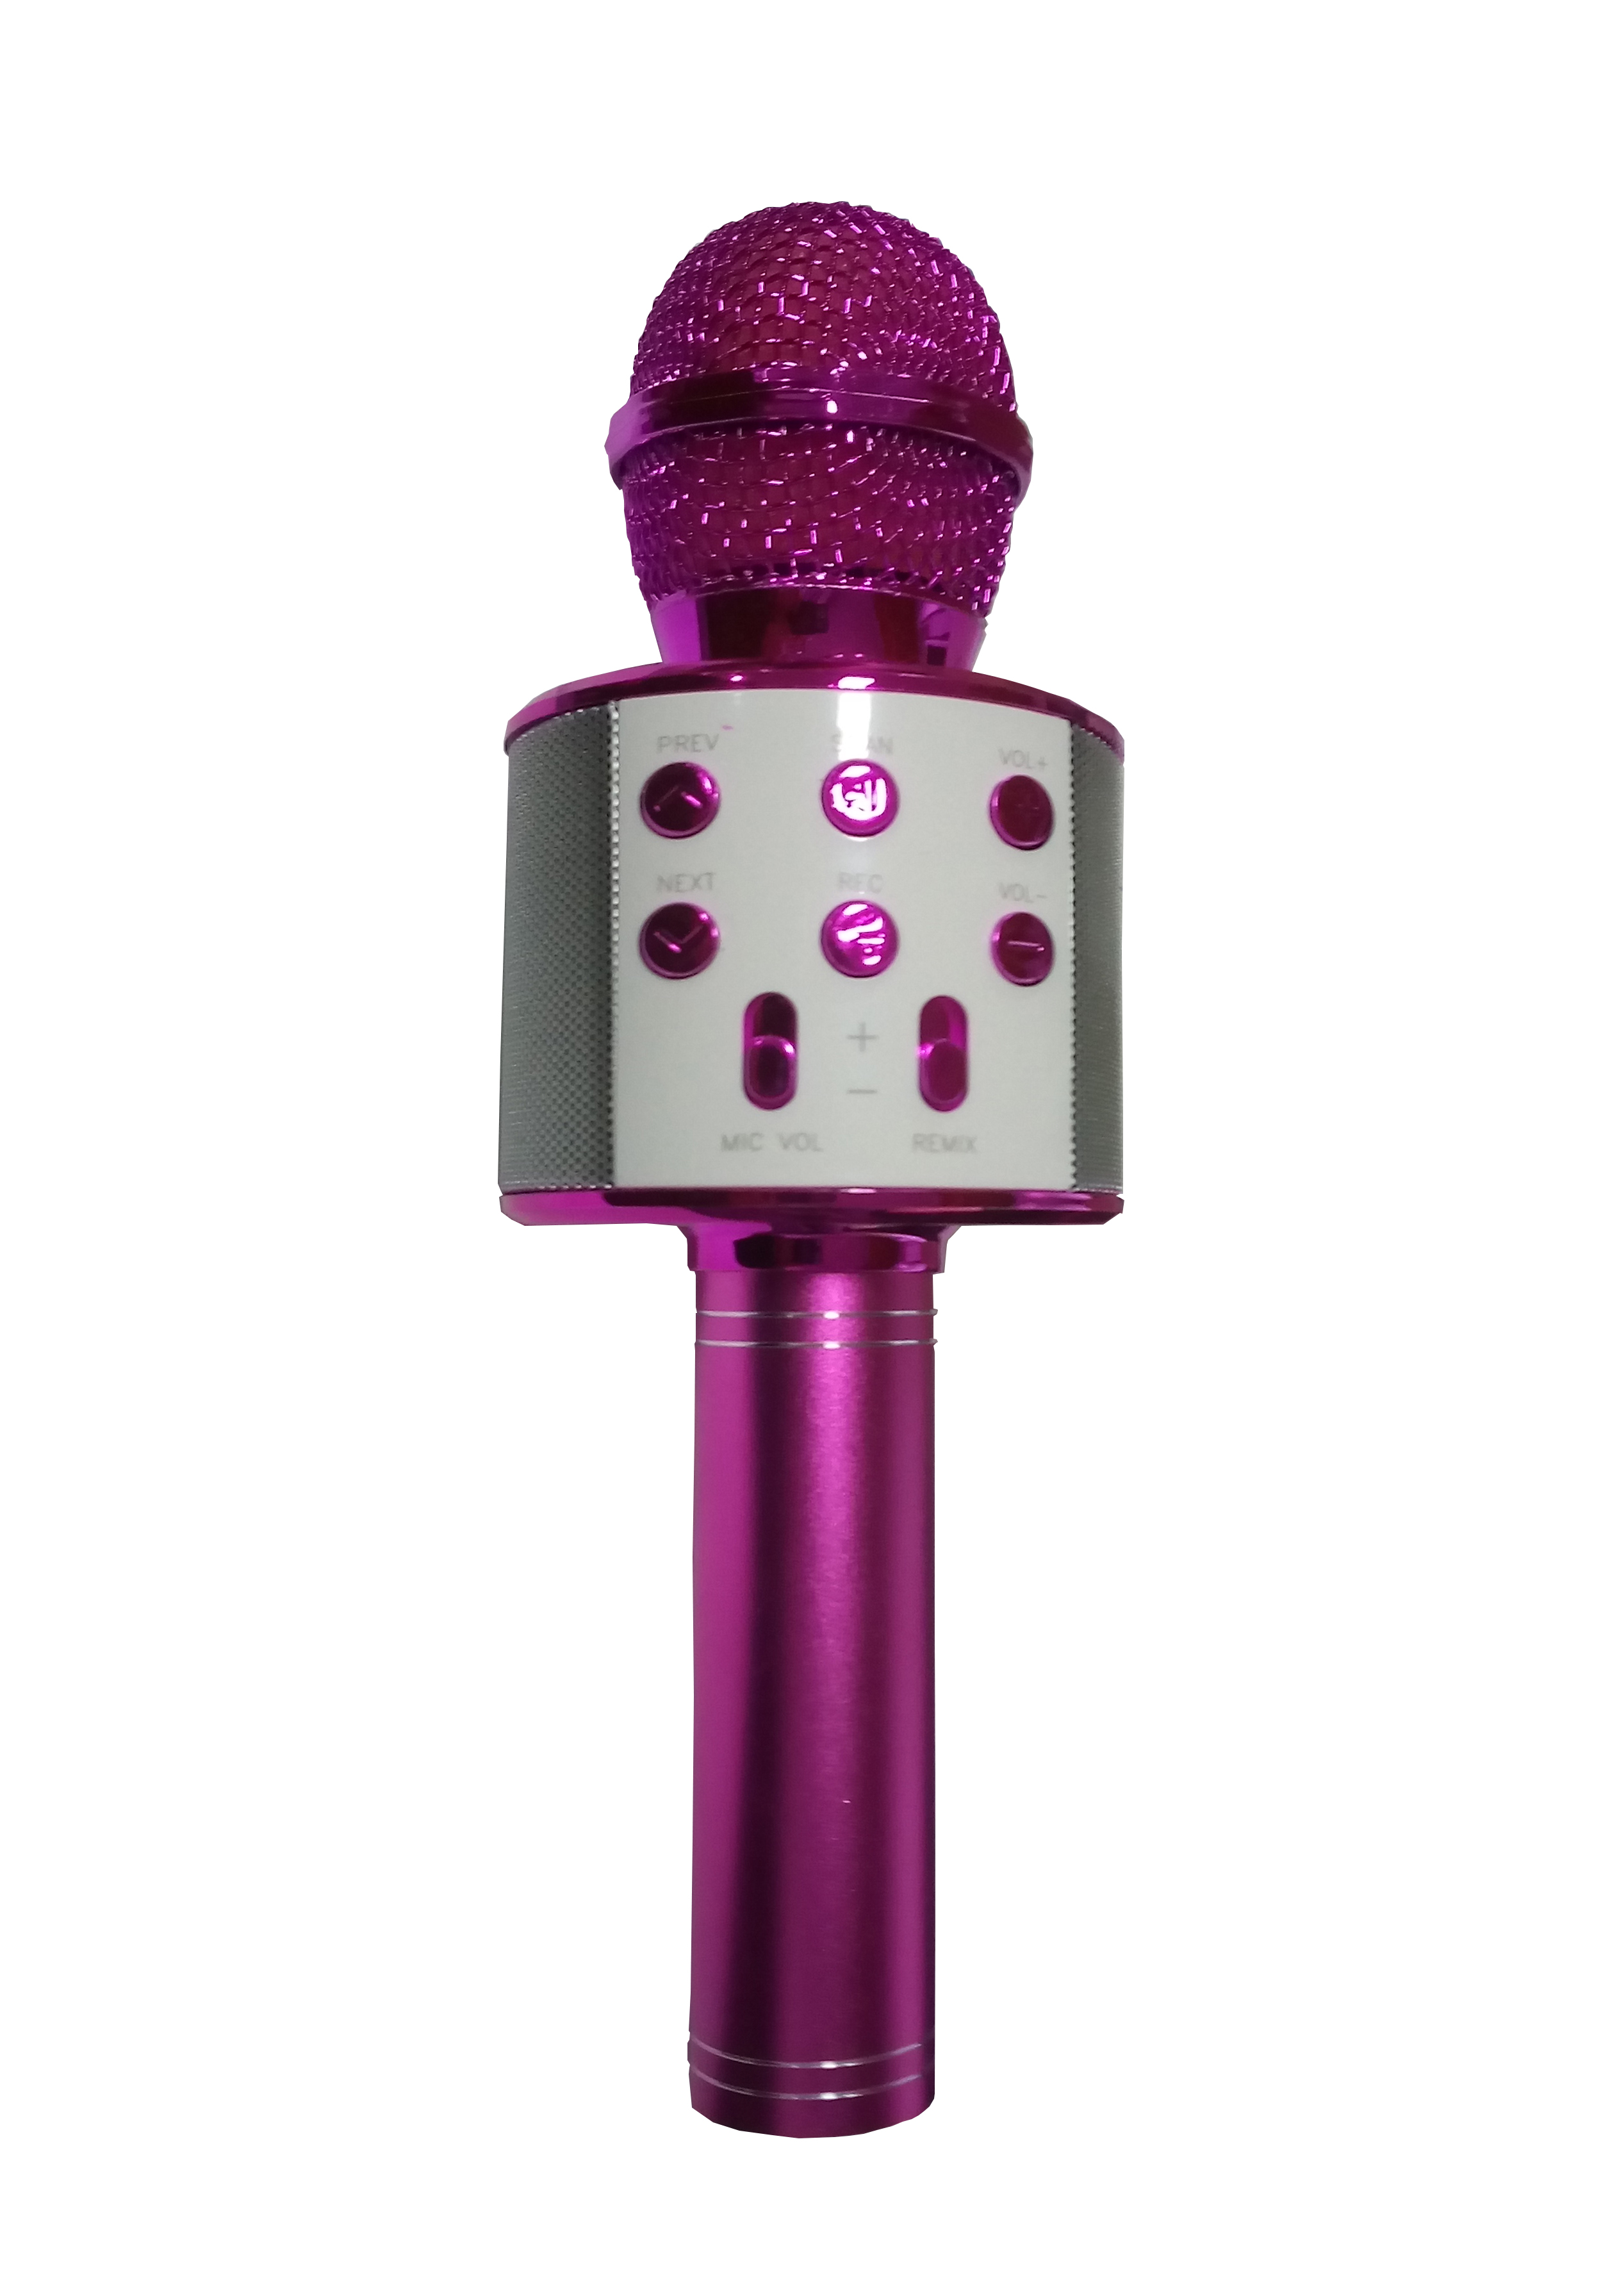 Microfon karaoke , cu leduri multicolore , usb , tf card, aux in jack 3,5 mm , culoare roz